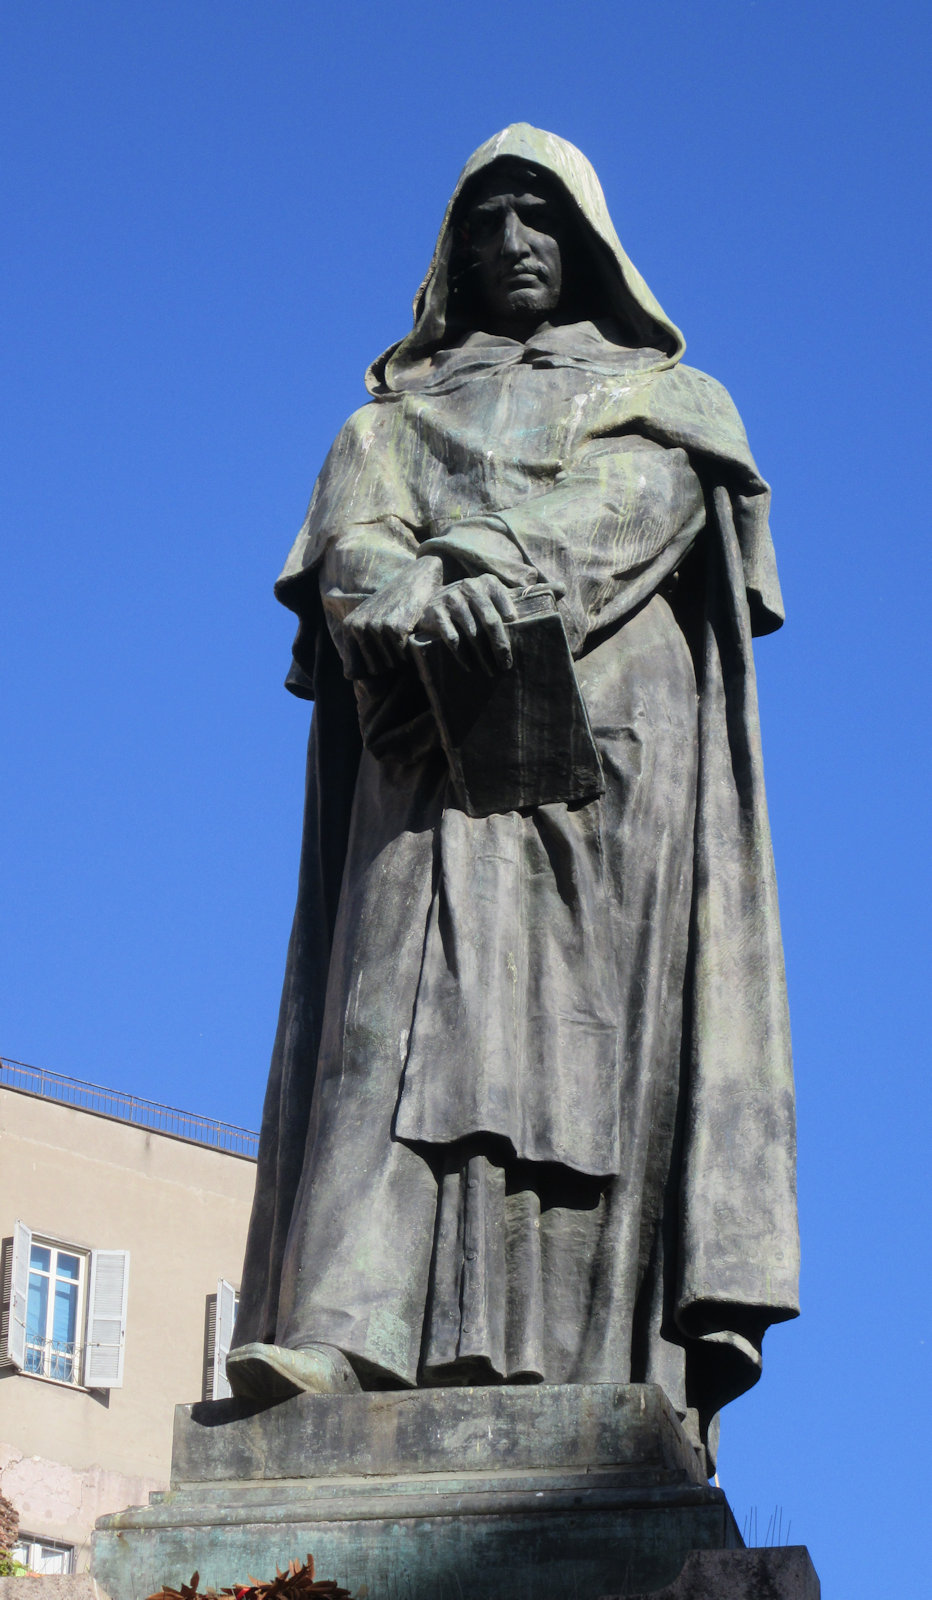 Denkmal für Giordano Bruno, den Priester, Dichter, Philosophen und Astronomen, der 1600 der Ketzerei und Magie für schuldig befunden und an der Stelle des Denkmals auf dem Scheiterhaufen verbrannt wurde, 1887, auf dem Platz Campo de' Fiori in Rom